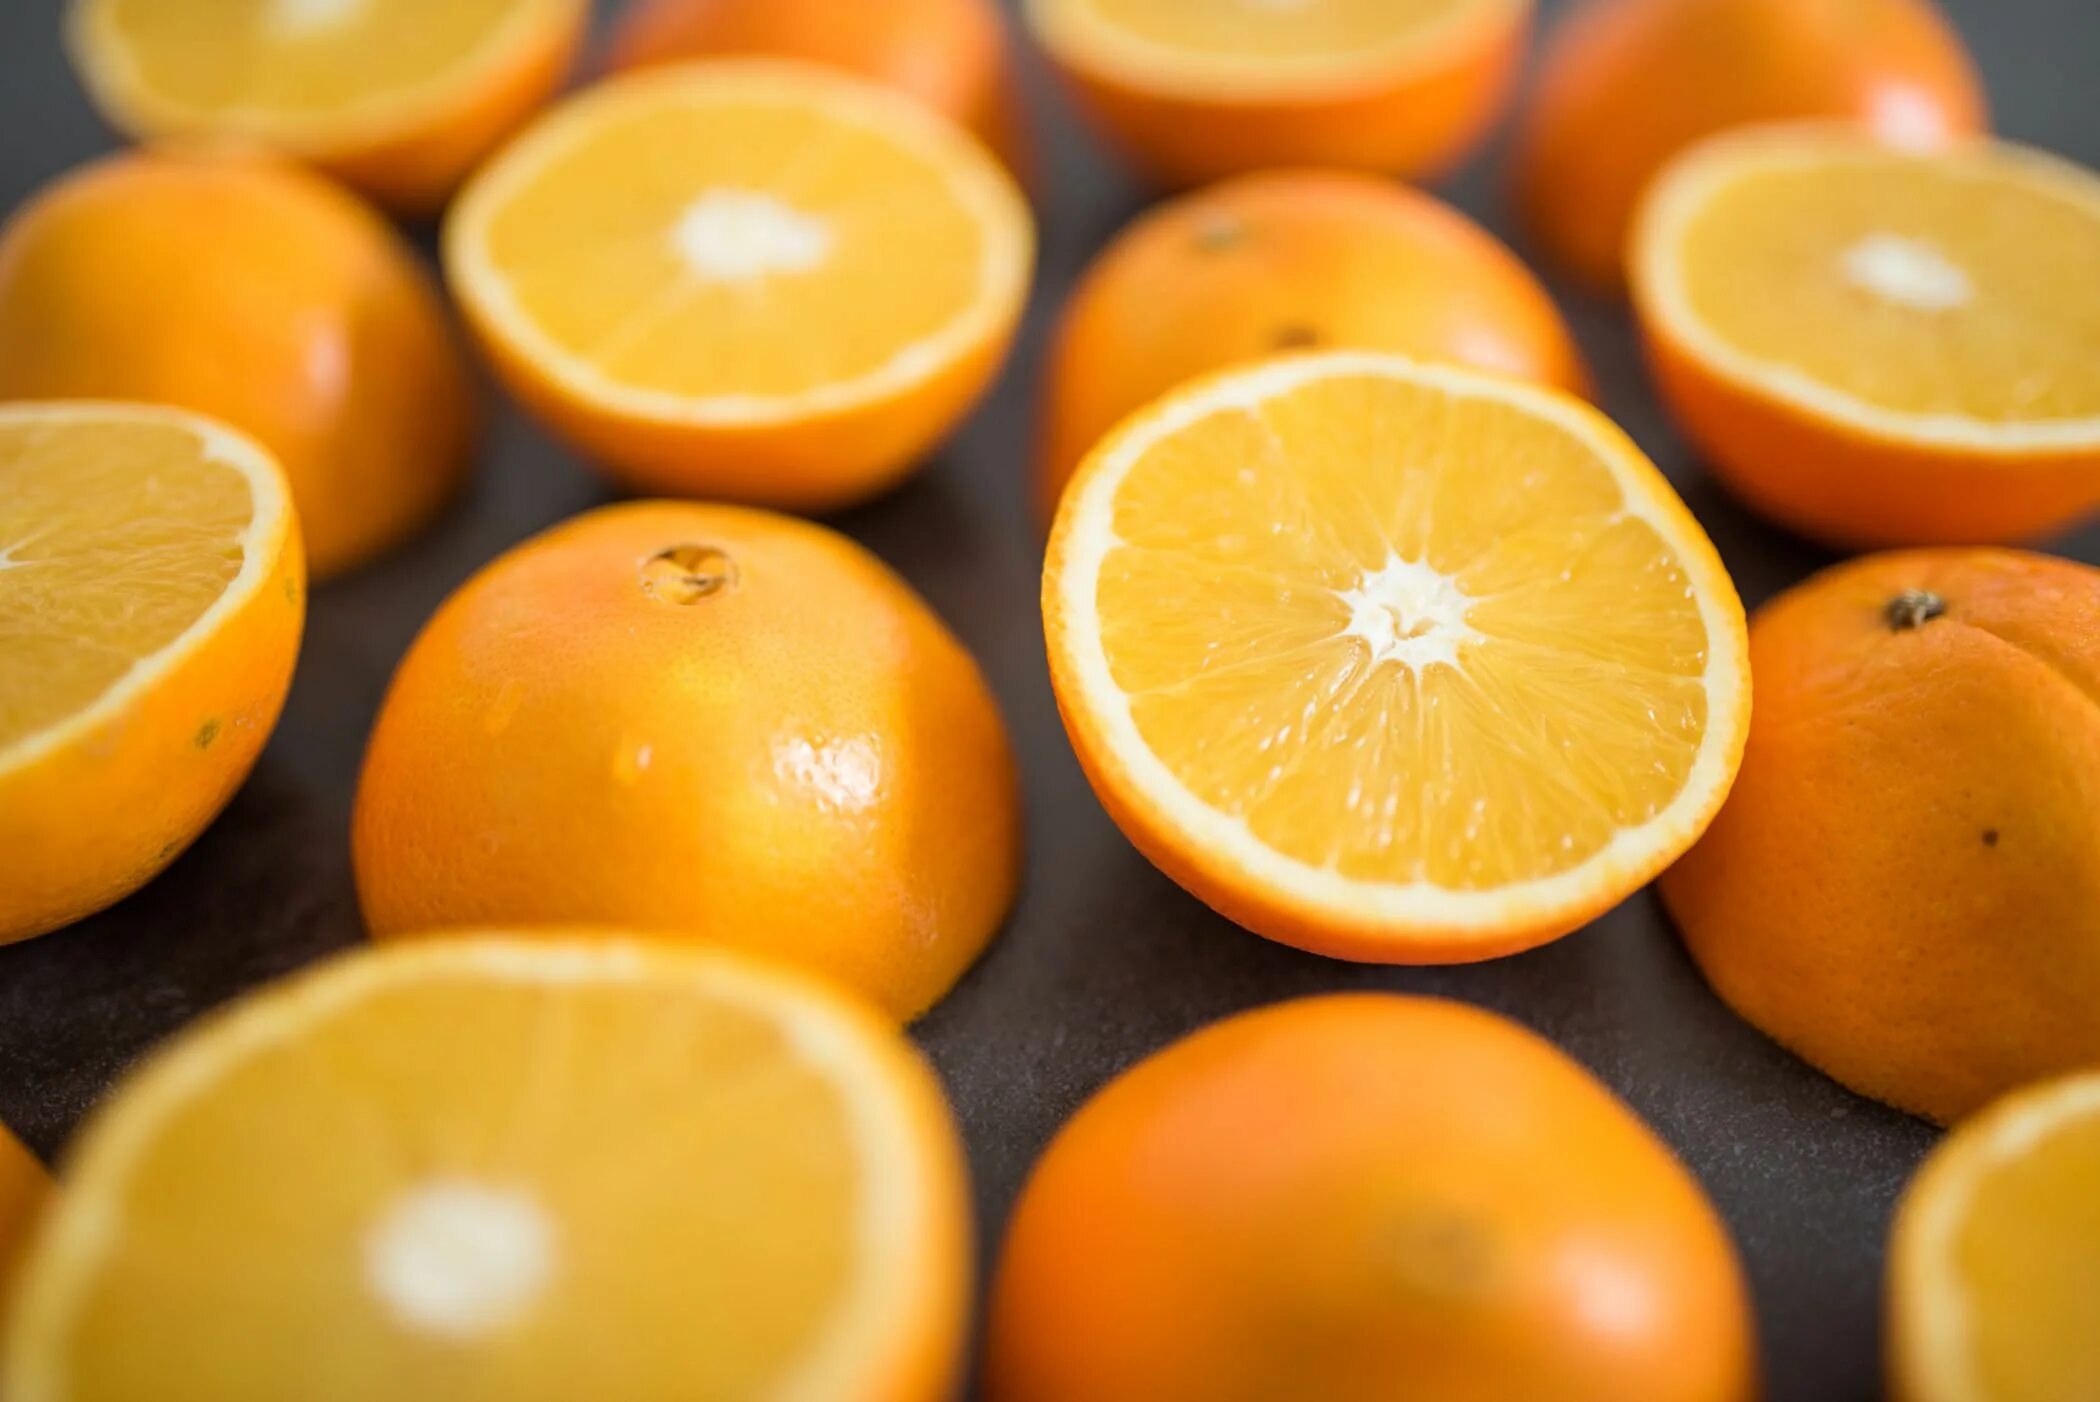 They like oranges. Цитрусовые. Апельсины на столе. Оранжевый фрукт. Сочный апельсин.